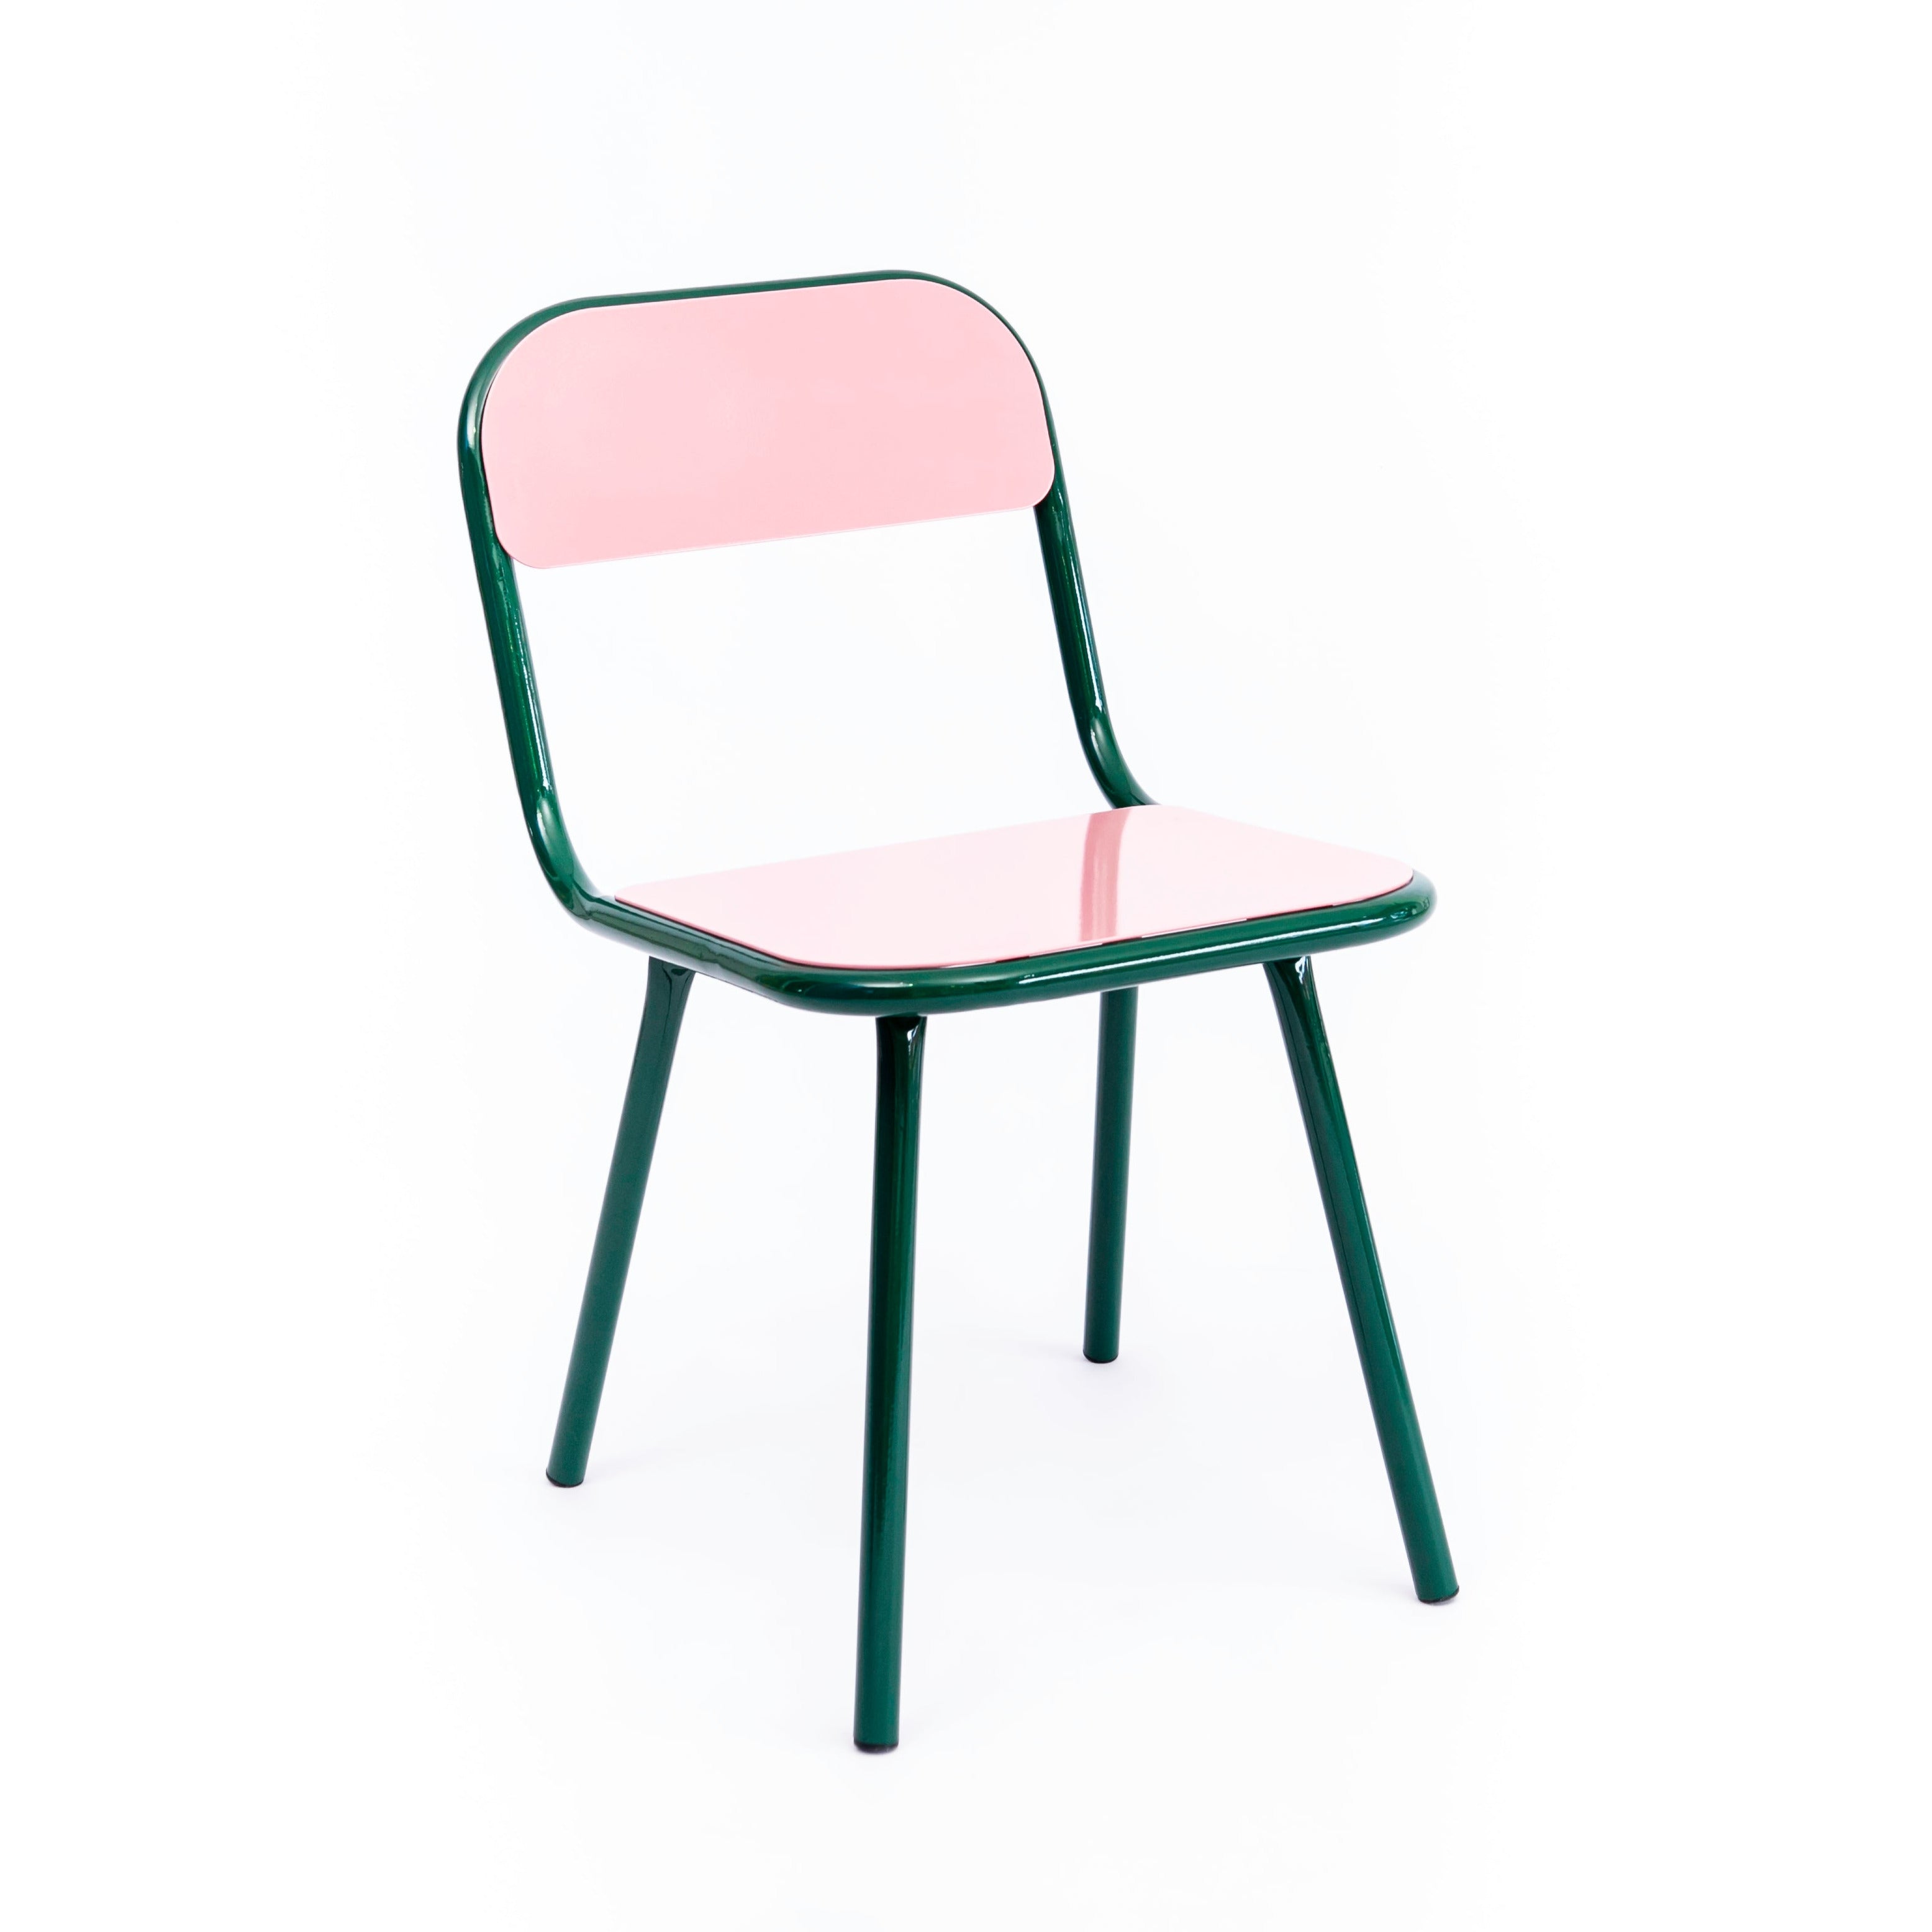 Futura Chair